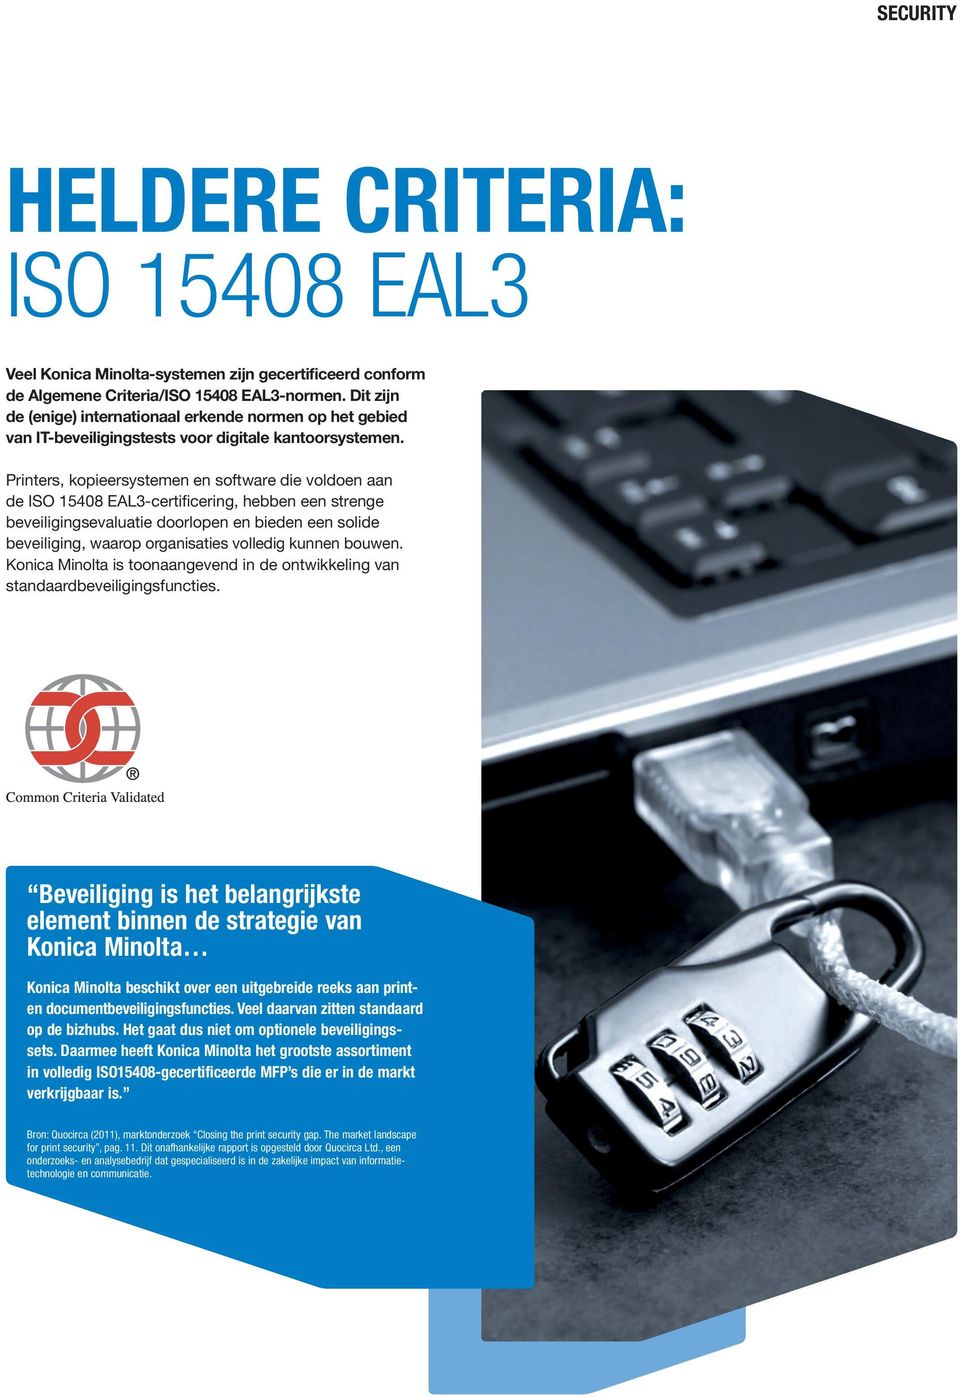 Printers, kopieersystemen en software die voldoen aan de ISO 15408 EAL3-certificering, hebben een strenge beveiligingsevaluatie doorlopen en bieden een solide beveiliging, waarop organisaties